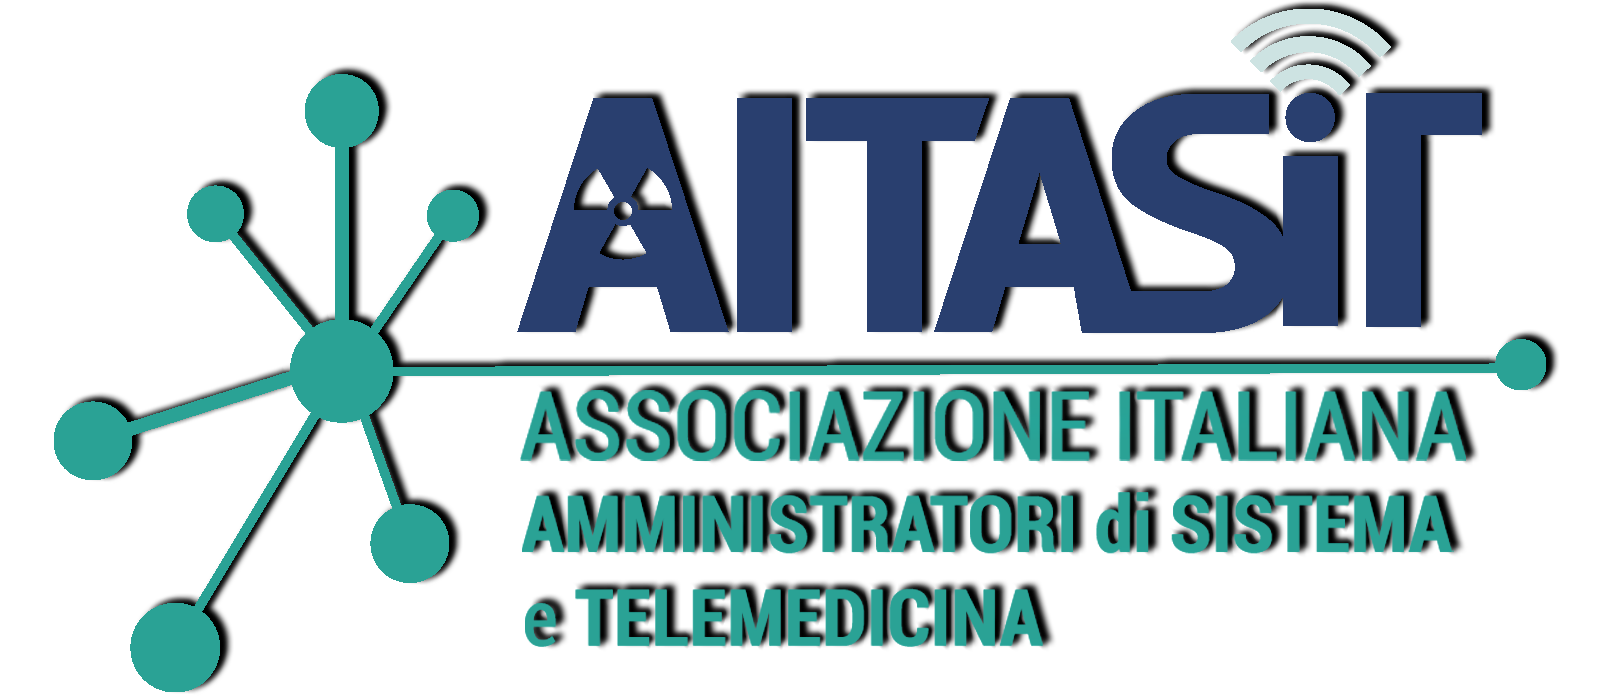 Accordo di collaborazione tra AIPSI e AITASIT, Associazione Italiana Amministratori di Sistema e Telemedicina